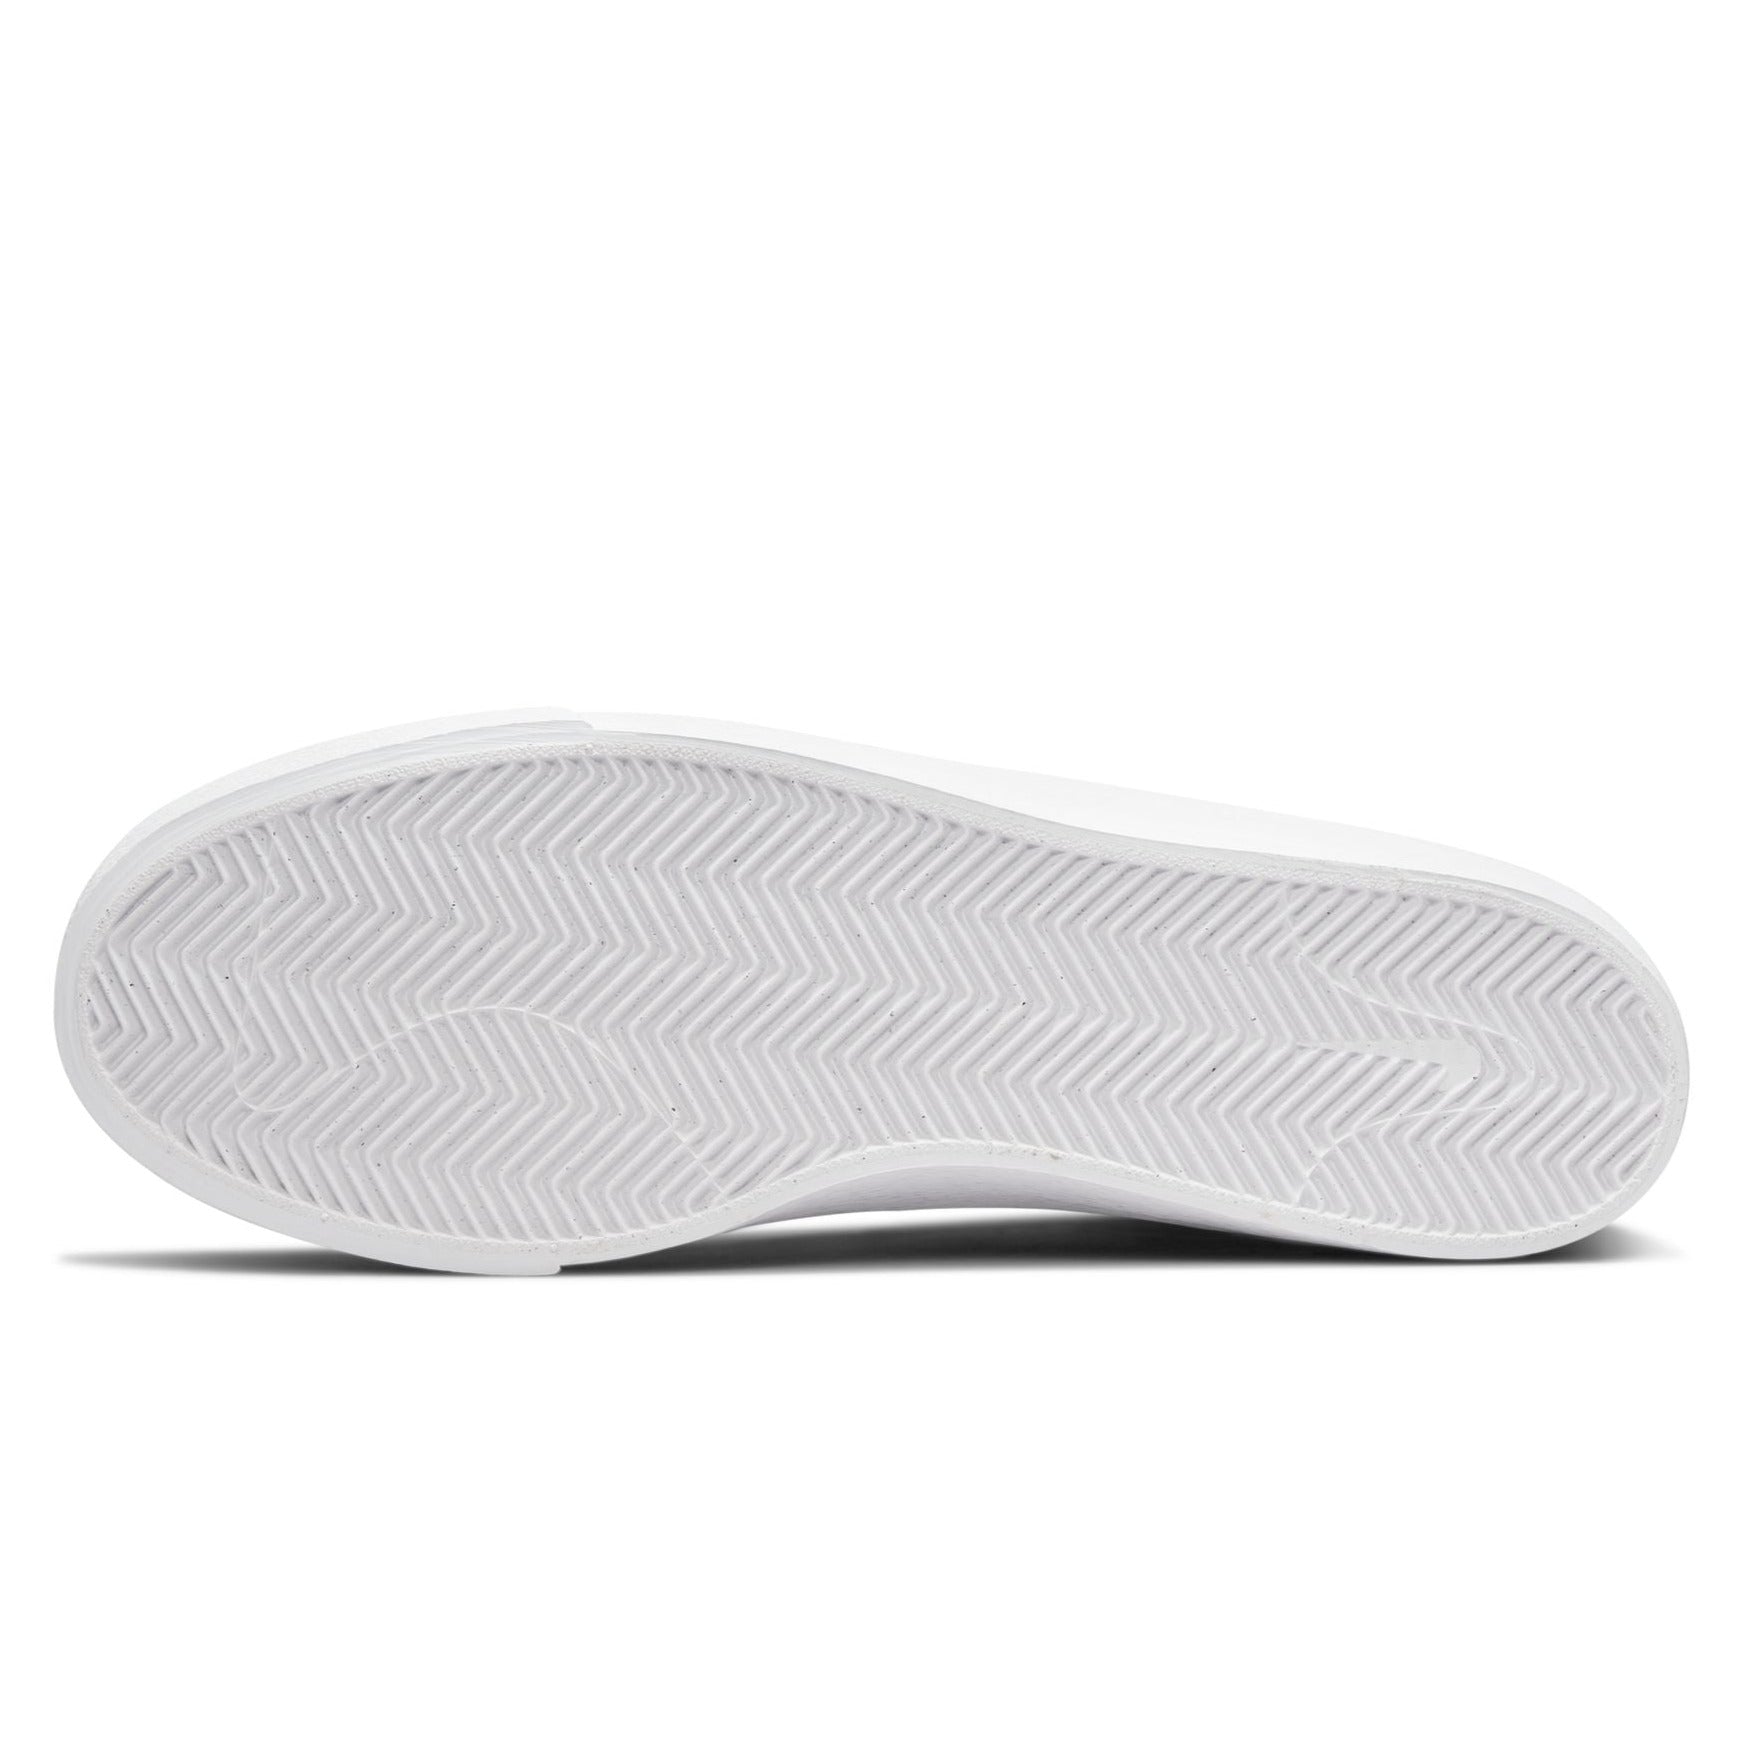 Sail/White Blazer Mid Court Nike SB Skate Shoe Bottom